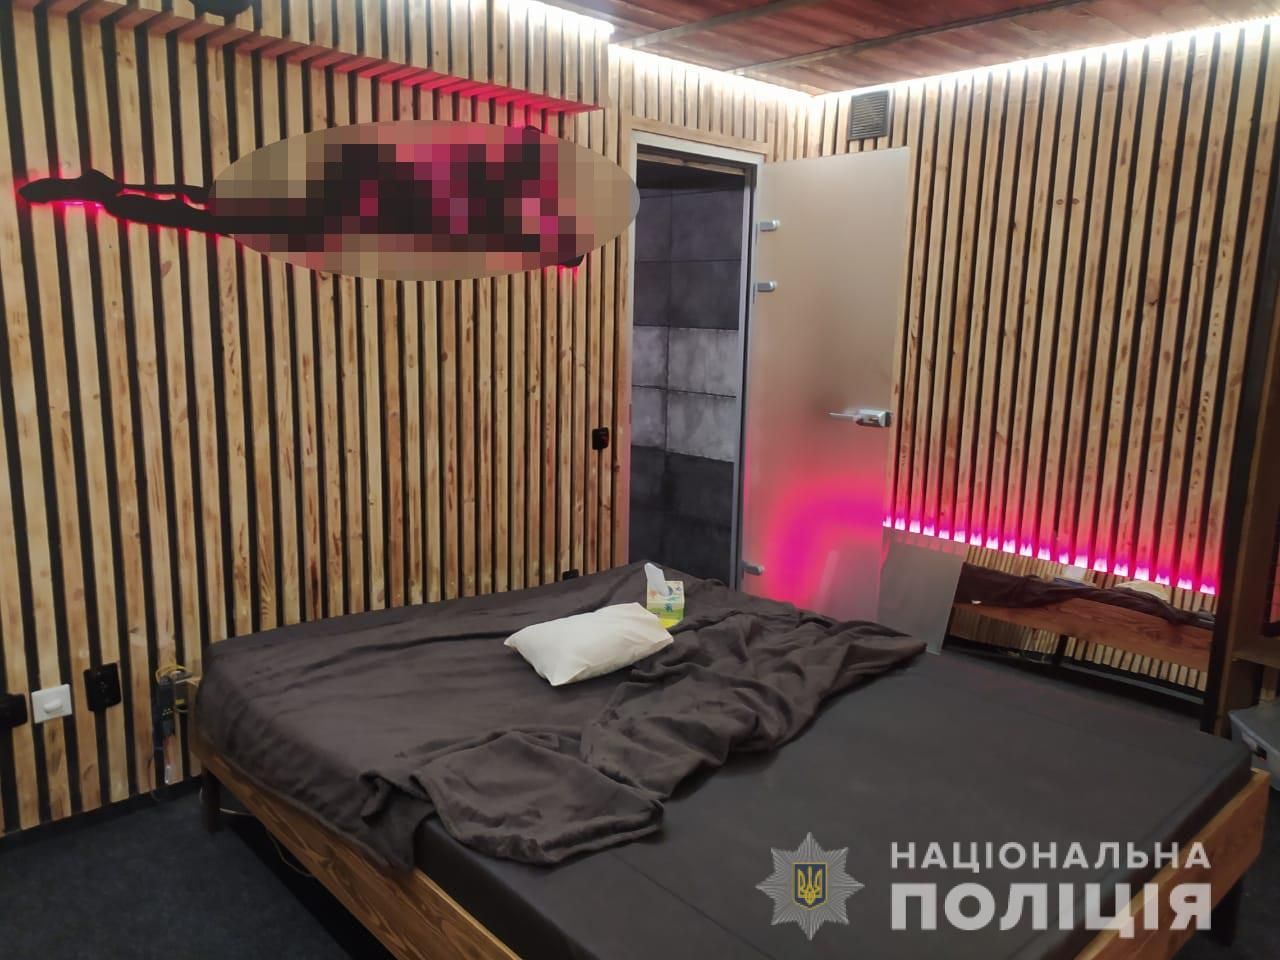 У Вінниці жінка організувала дім розпусти під виглядом масажного салону - Україна новини - 24 Канал